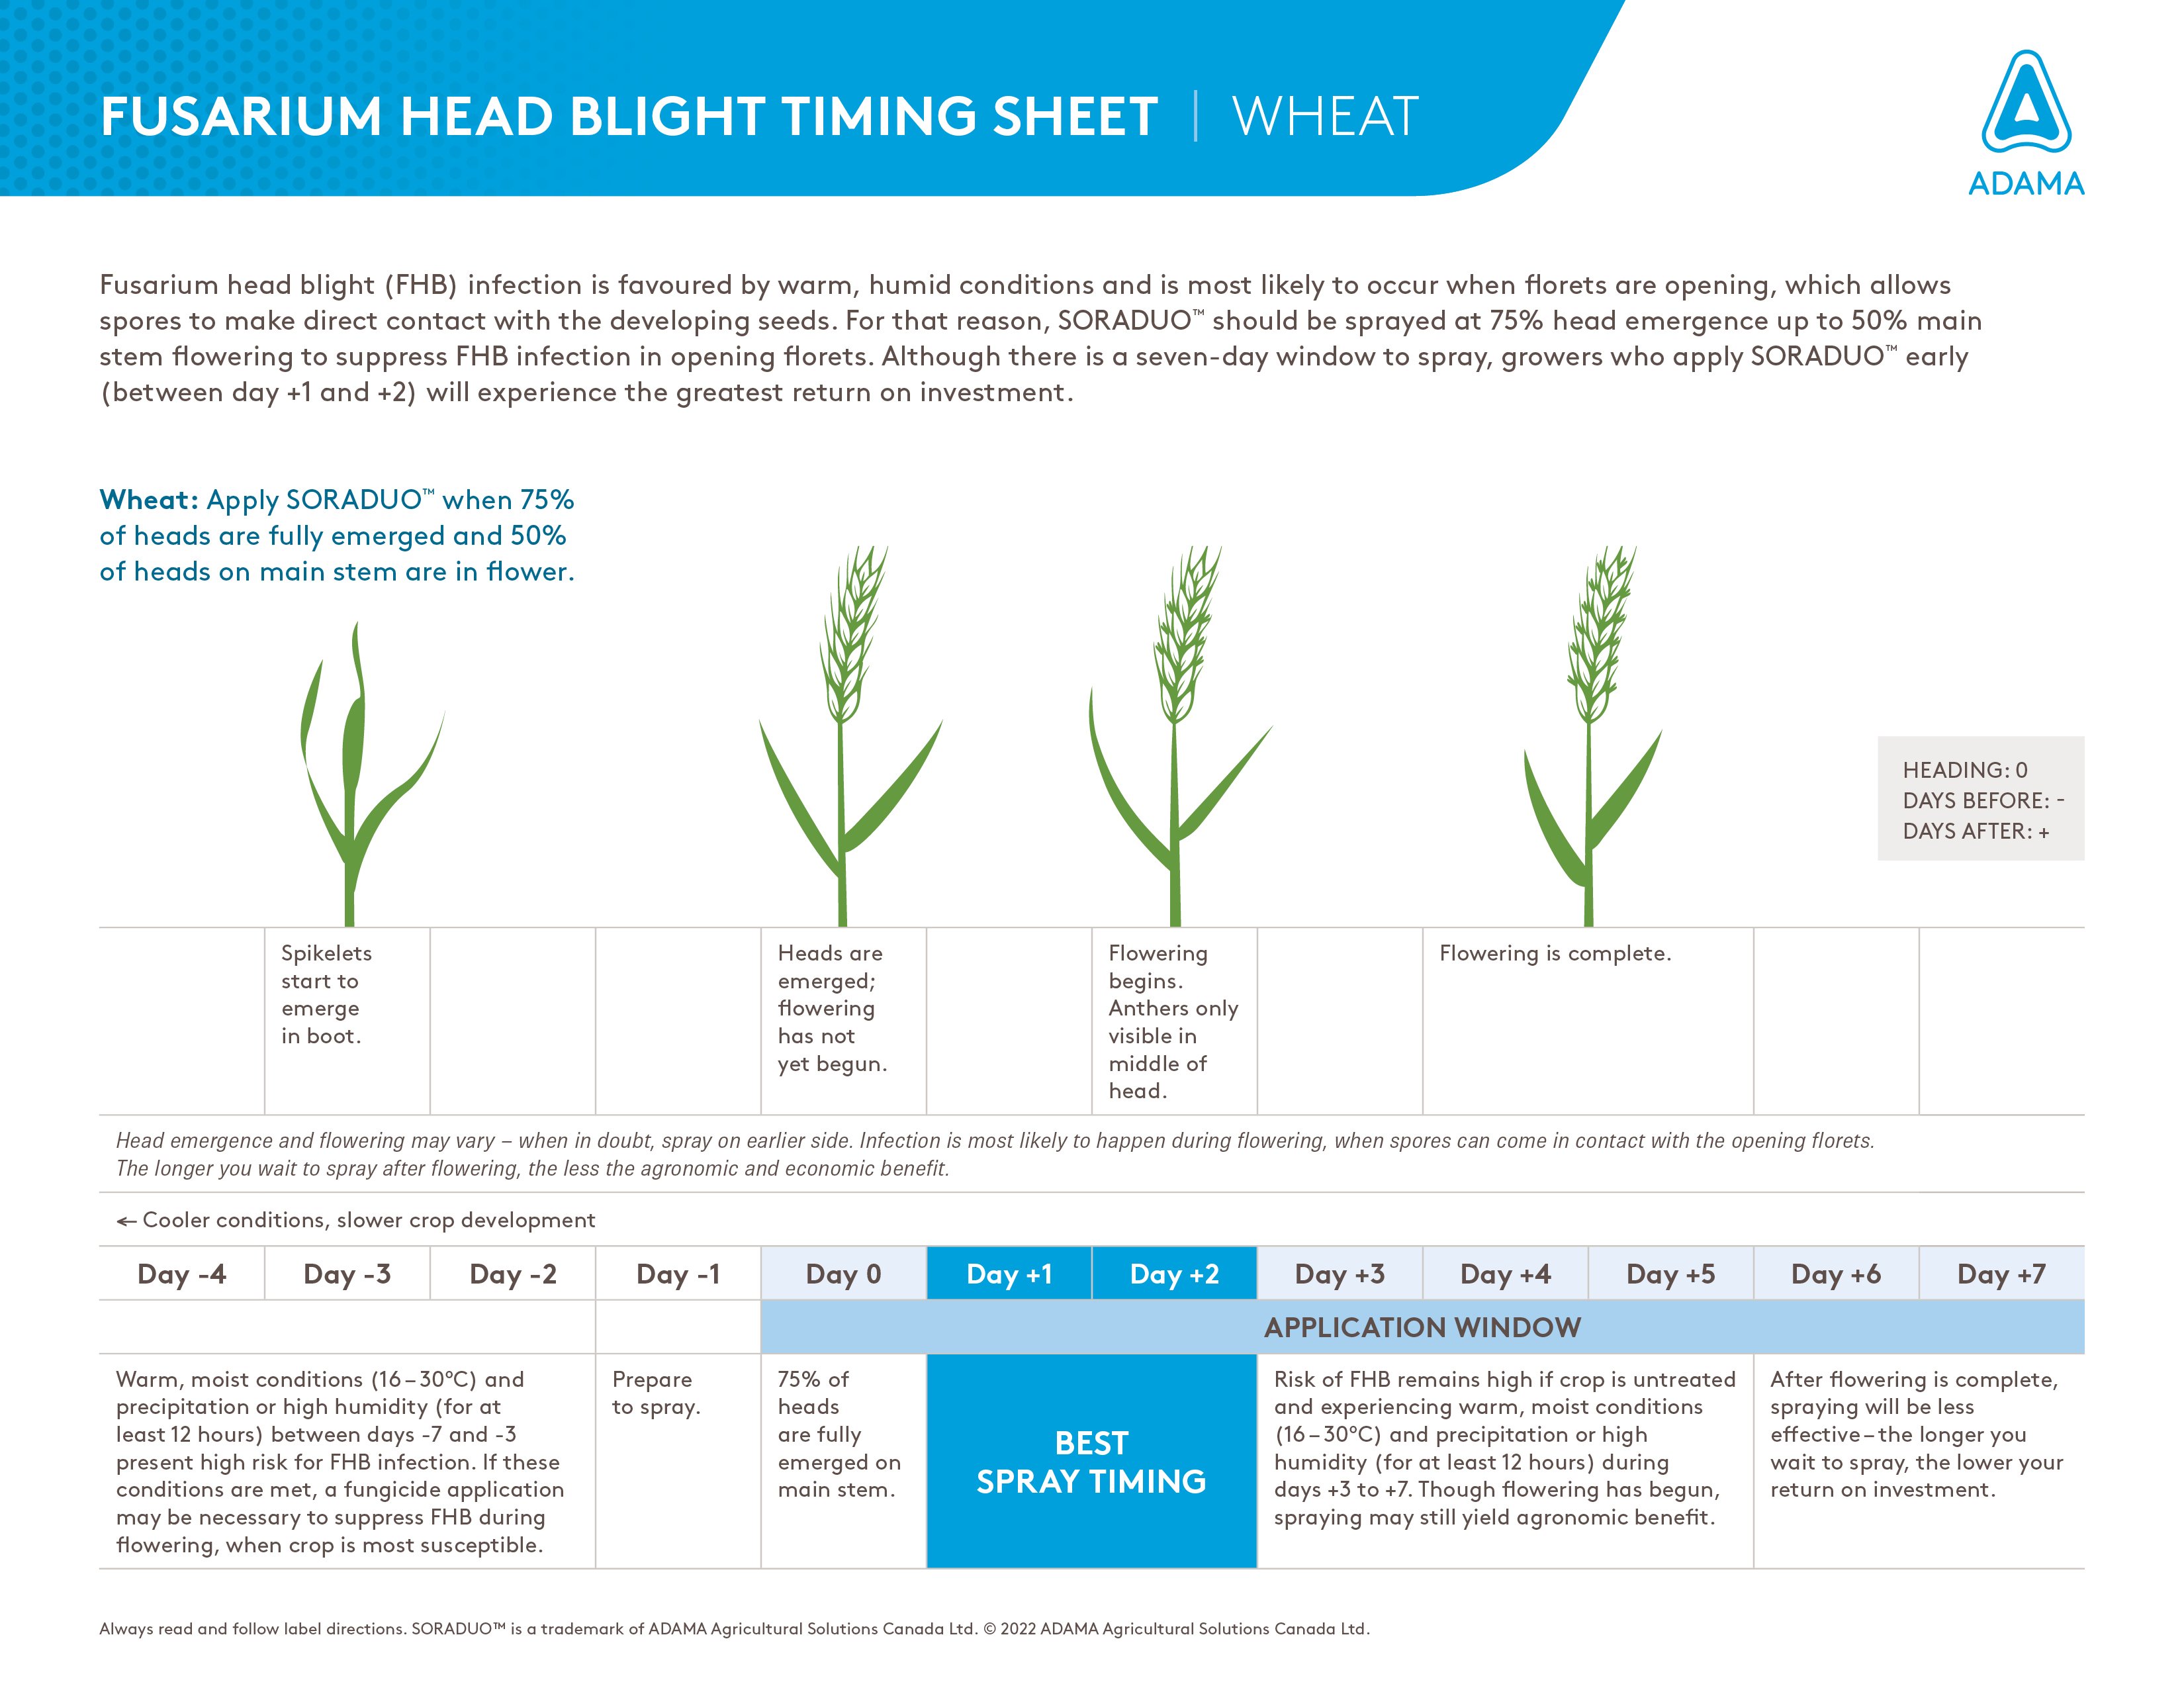 Fight fusarium head blight chart